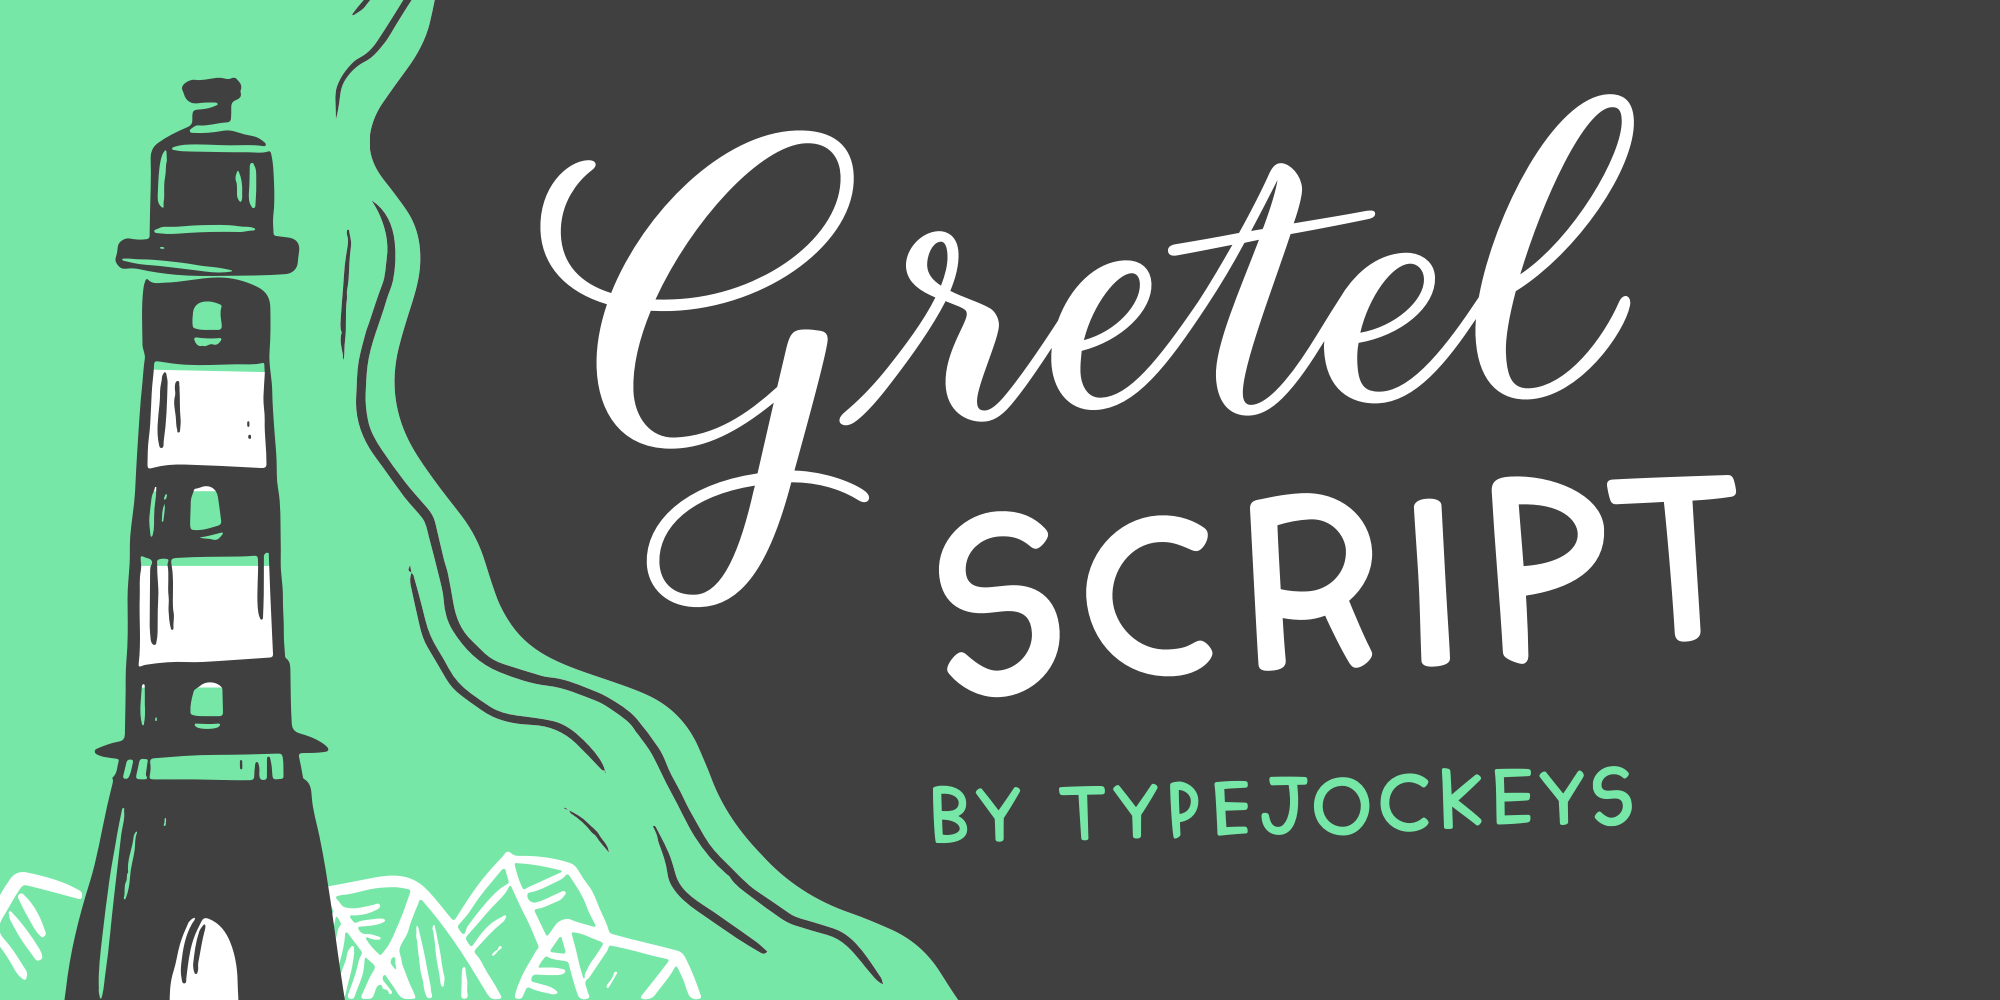 Gretel Script from Typejockeys